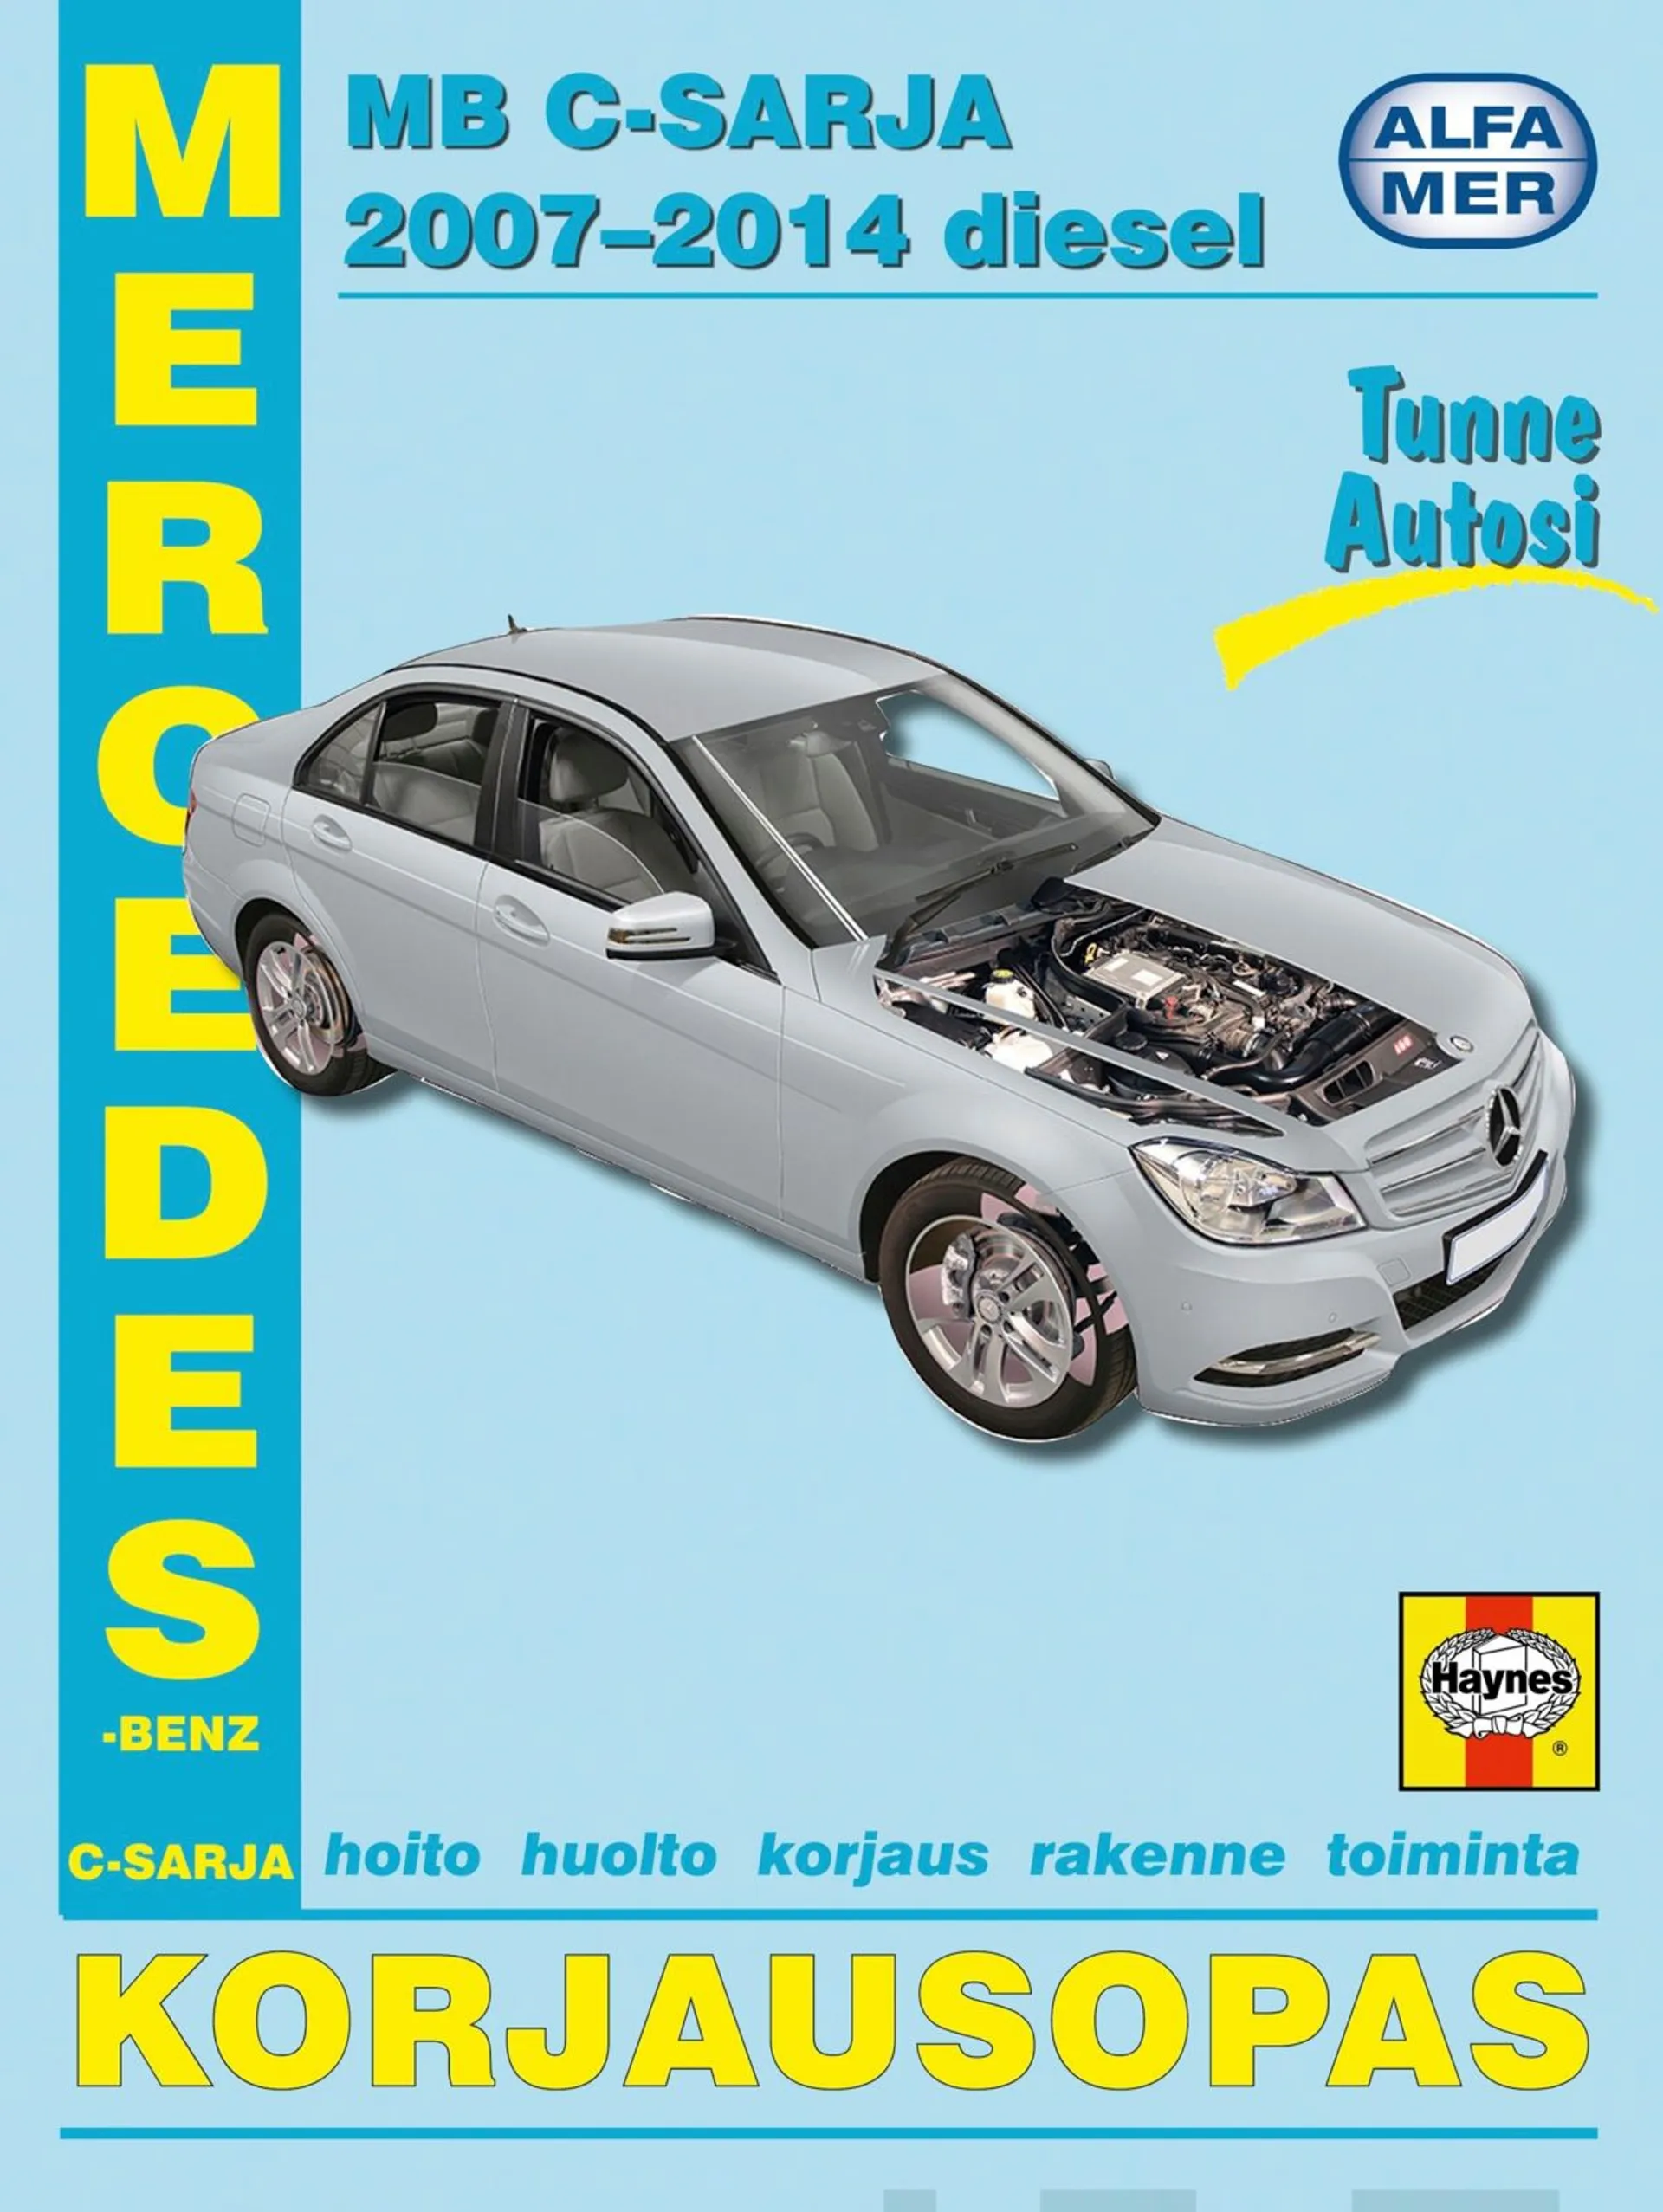 Asikainen, Korjausopas Mercedes-Benz C-sarja diesel 2007-2014